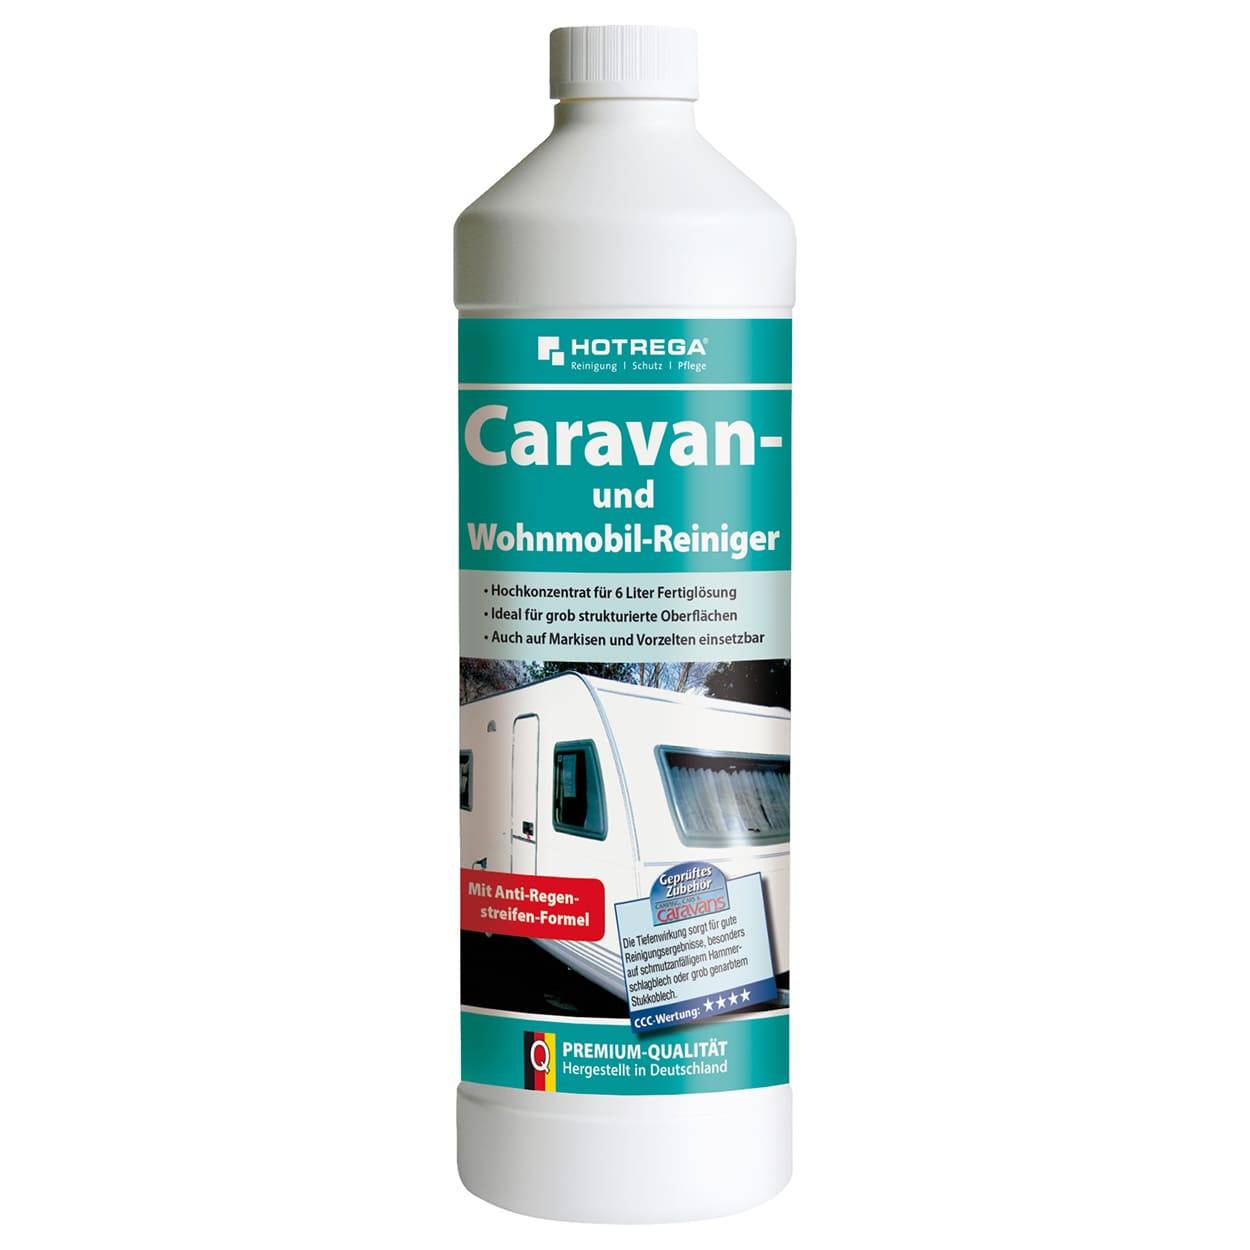 Caravan- und Wohnmobil-Reiniger